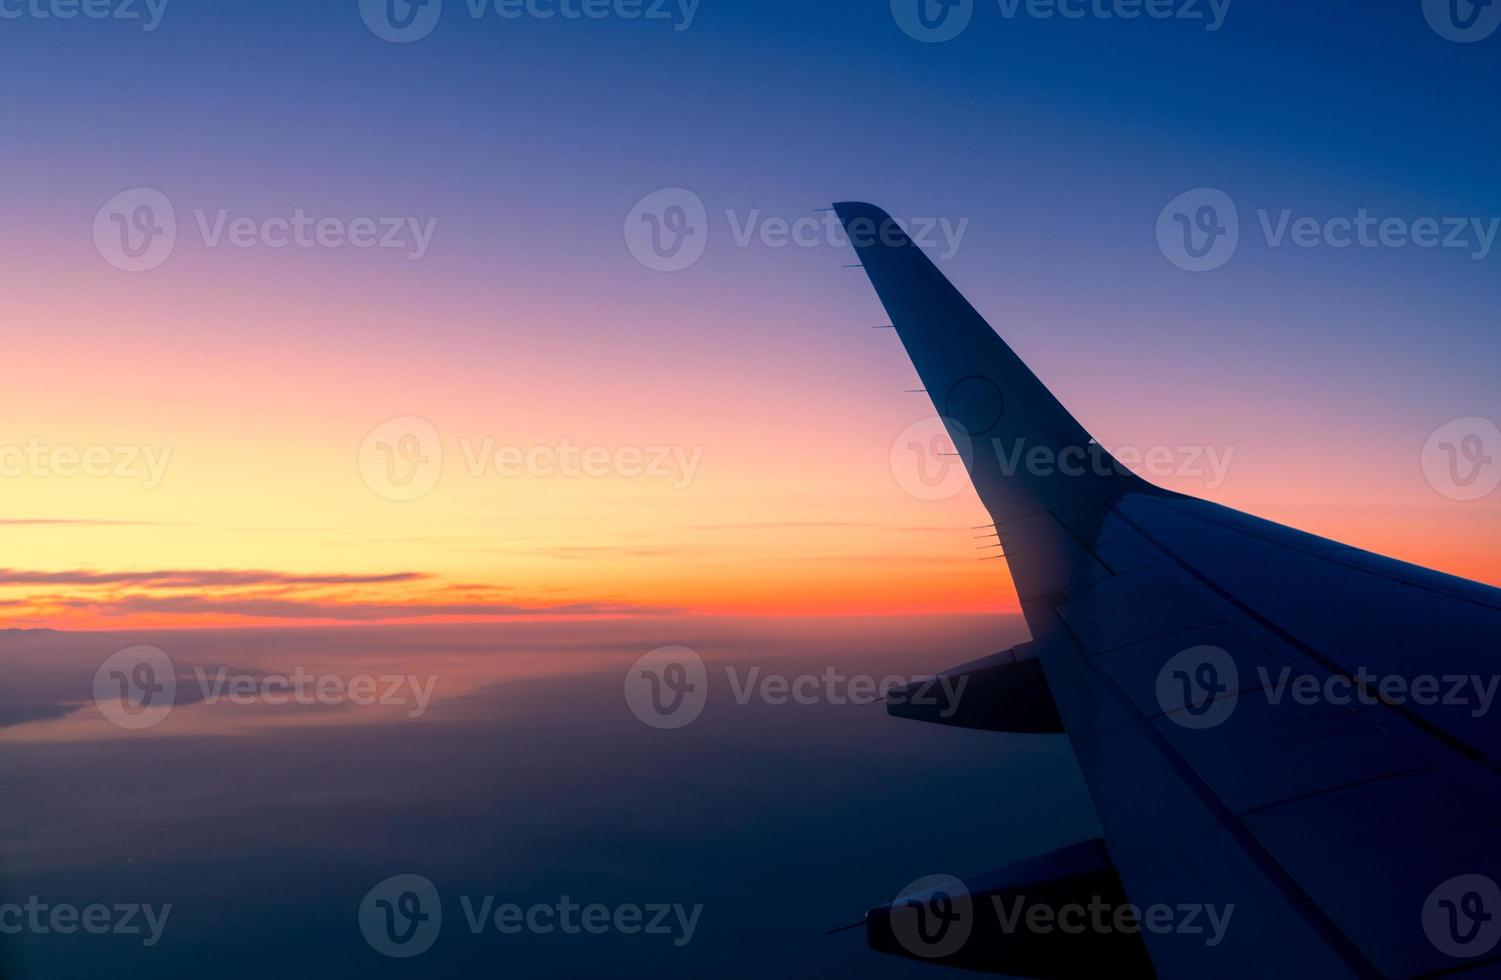 ala de avión con horizonte de amanecer. avión volando en el cielo. vista panorámica desde la ventana del avión. vuelo de aerolínea comercial. ala de avión por encima de las nubes. Vuelo internacional. viajar al extranjero despues del covid-19 foto